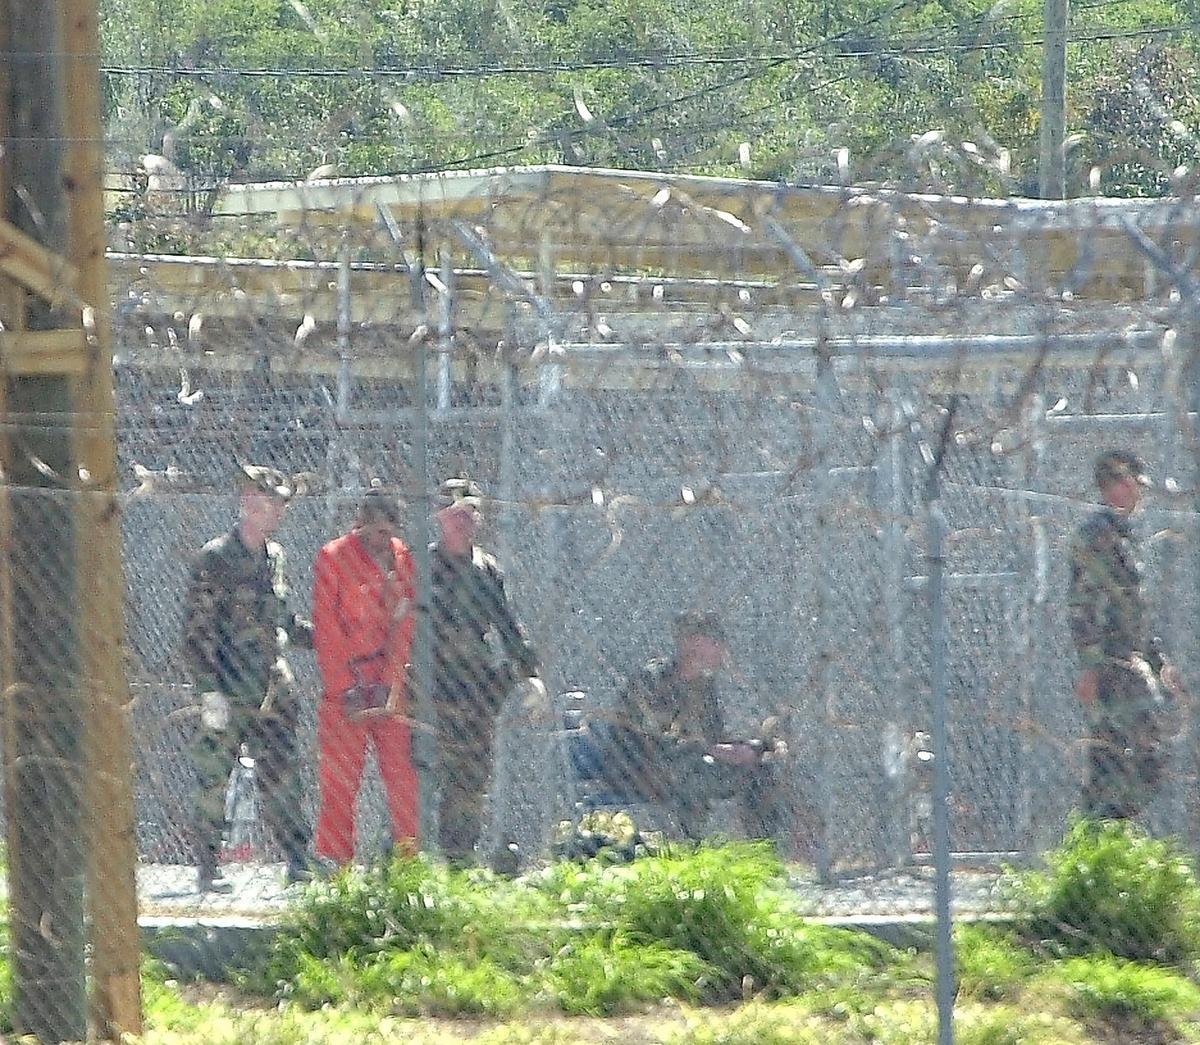 I dag sitter 172 fångar fortfarande kvar på Guantánamo. De kommer framför allt från Jemen, Afghanistan och Saudiarabien.